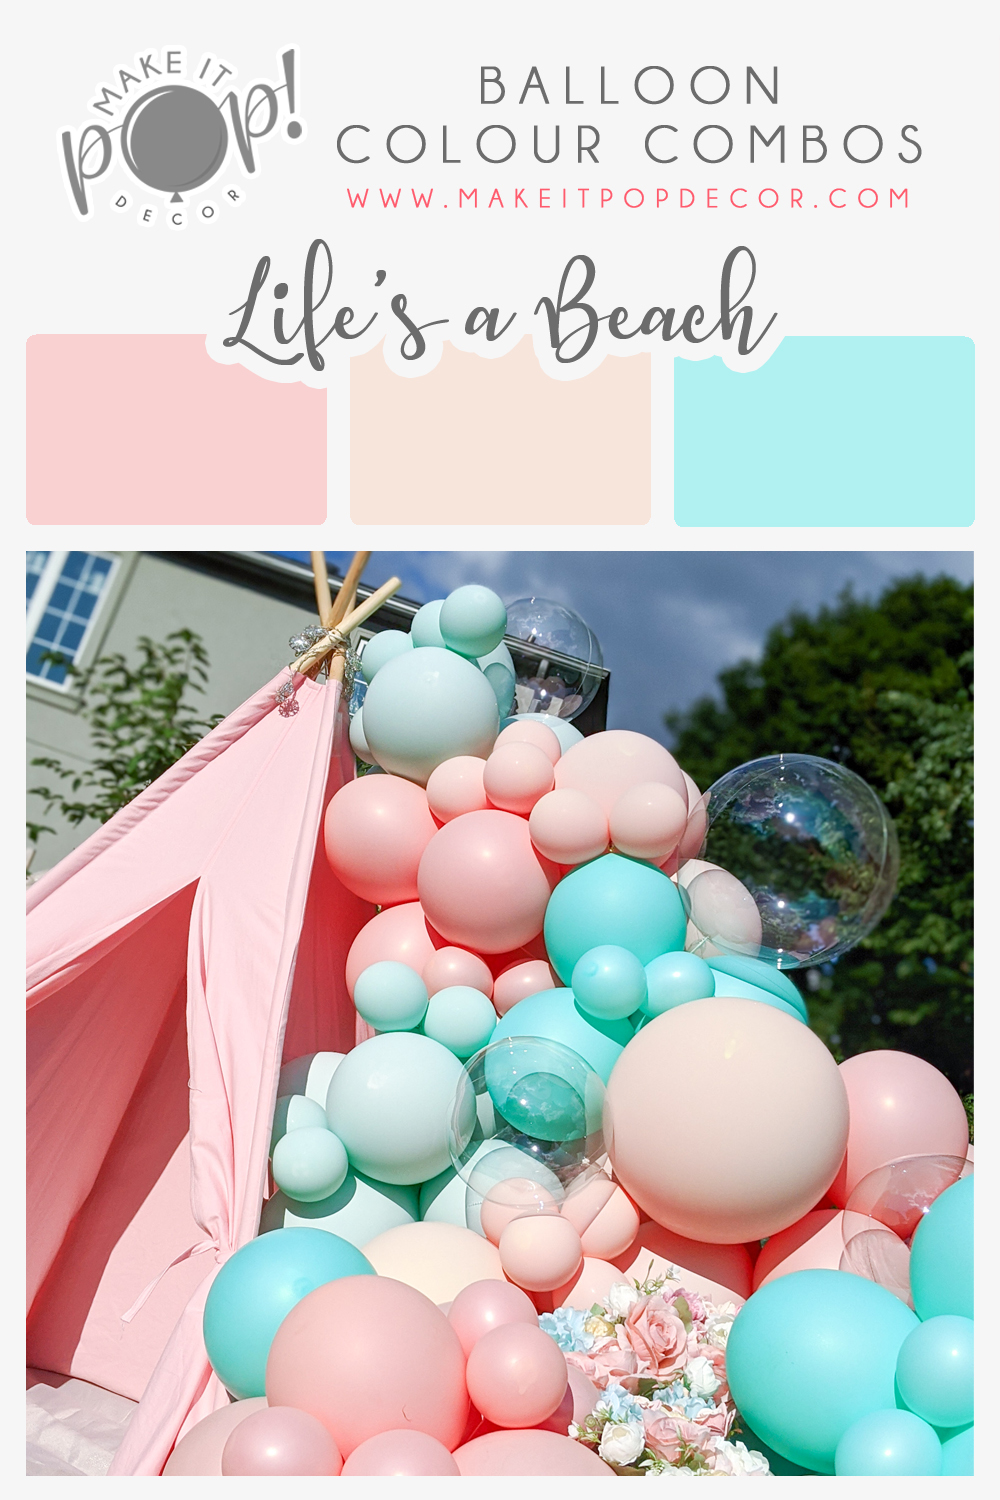 Make It Pop Decor - Life's a Beach Balloon Colour Combo